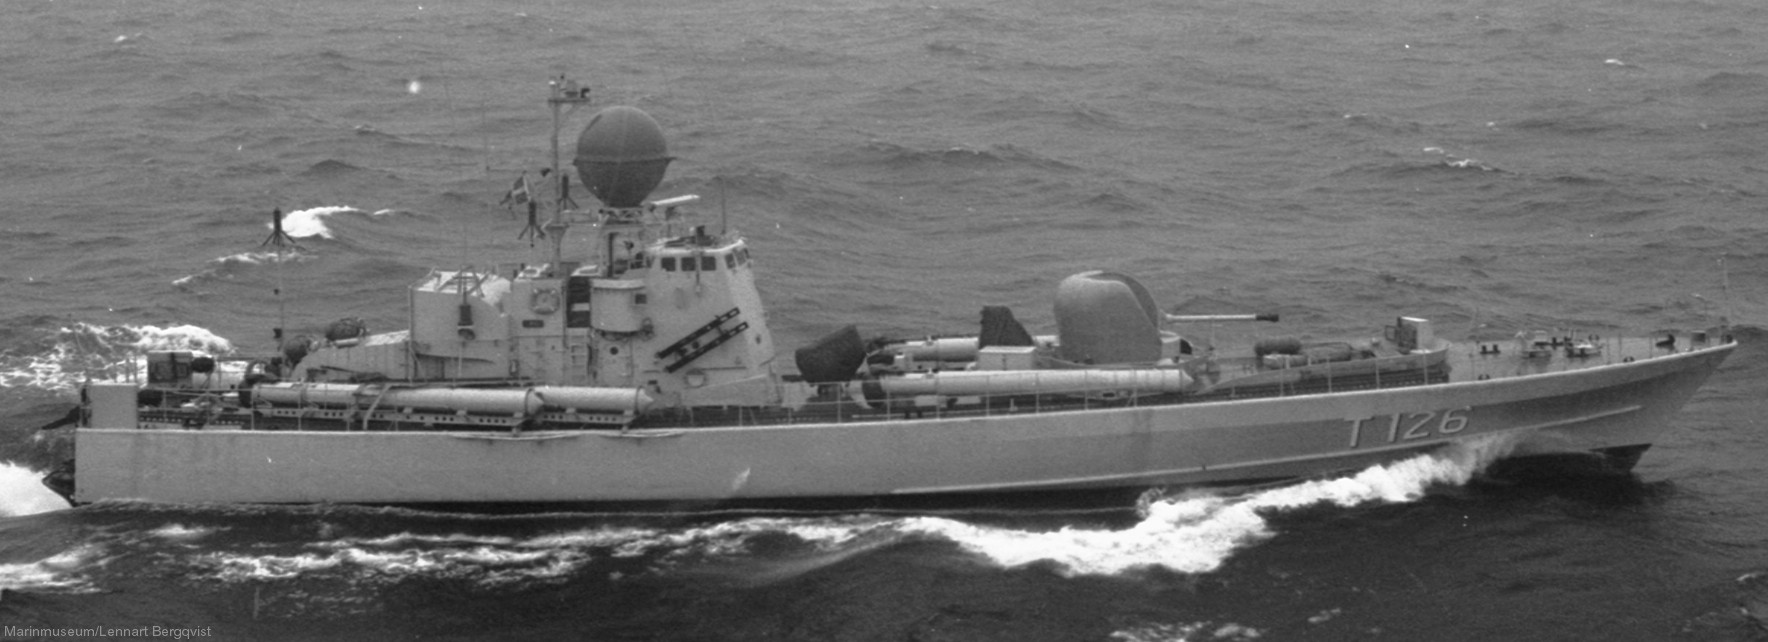 t126 virgo hswms hms spica class fast attack craft torpedo boat vessel swedish navy svenska marinen 03